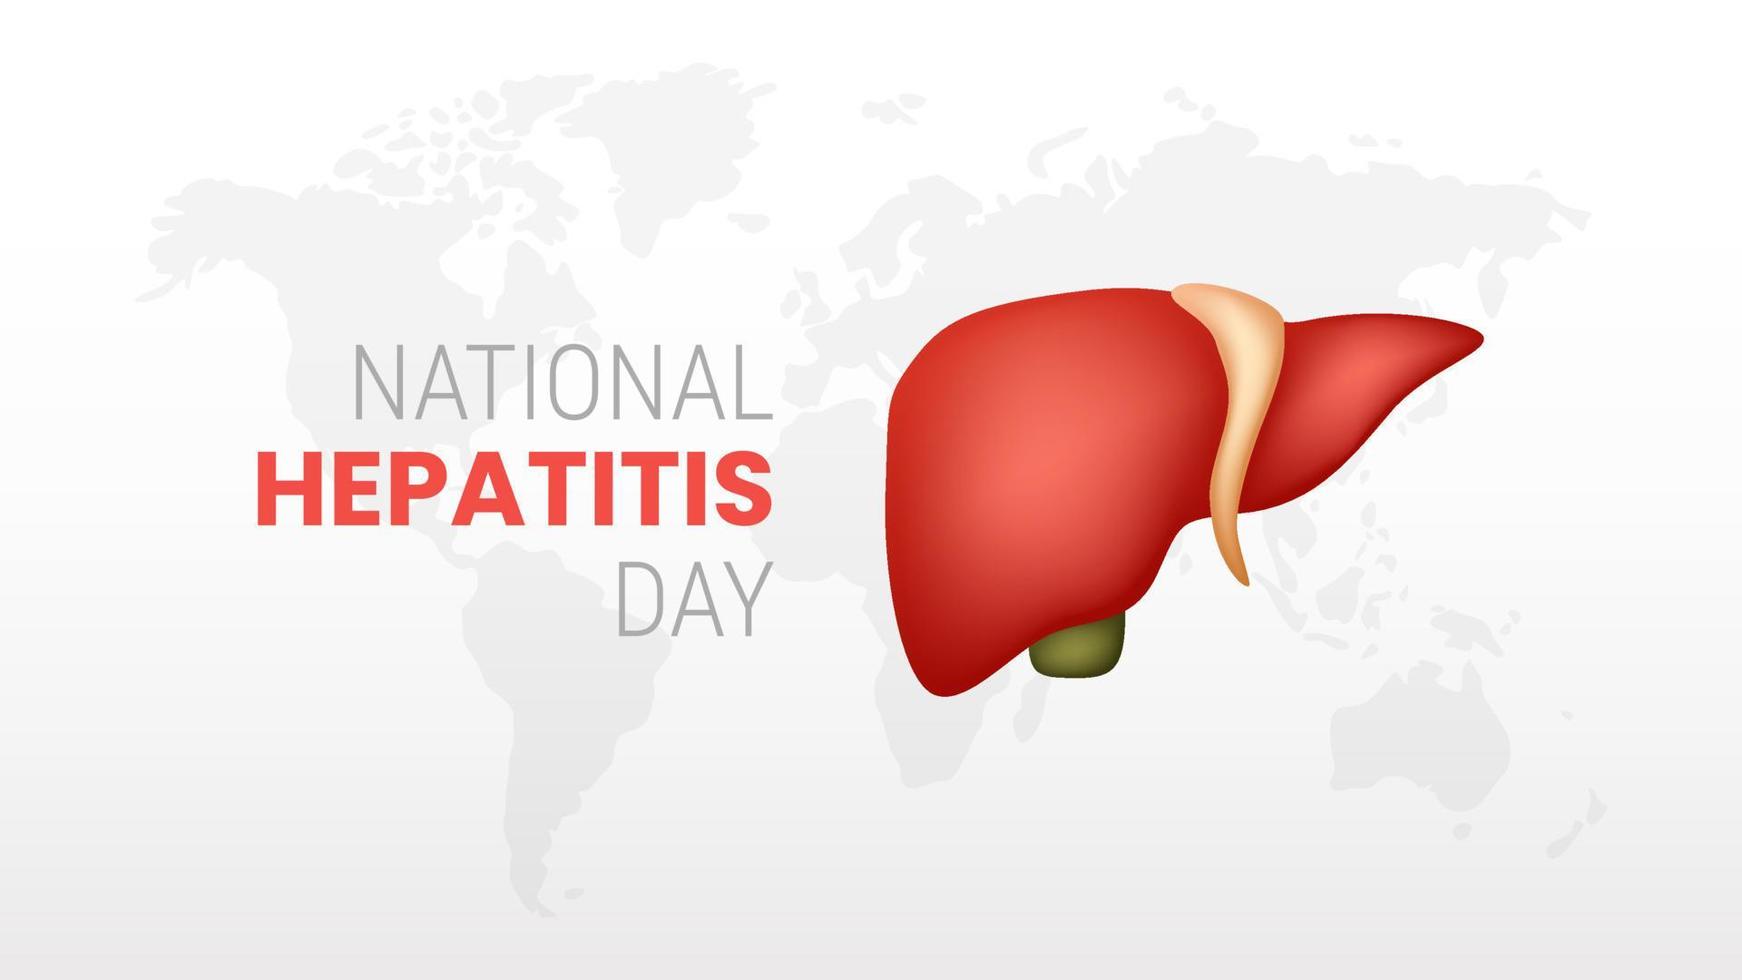 día mundial de la hepatitis sobre fondo blanco vector